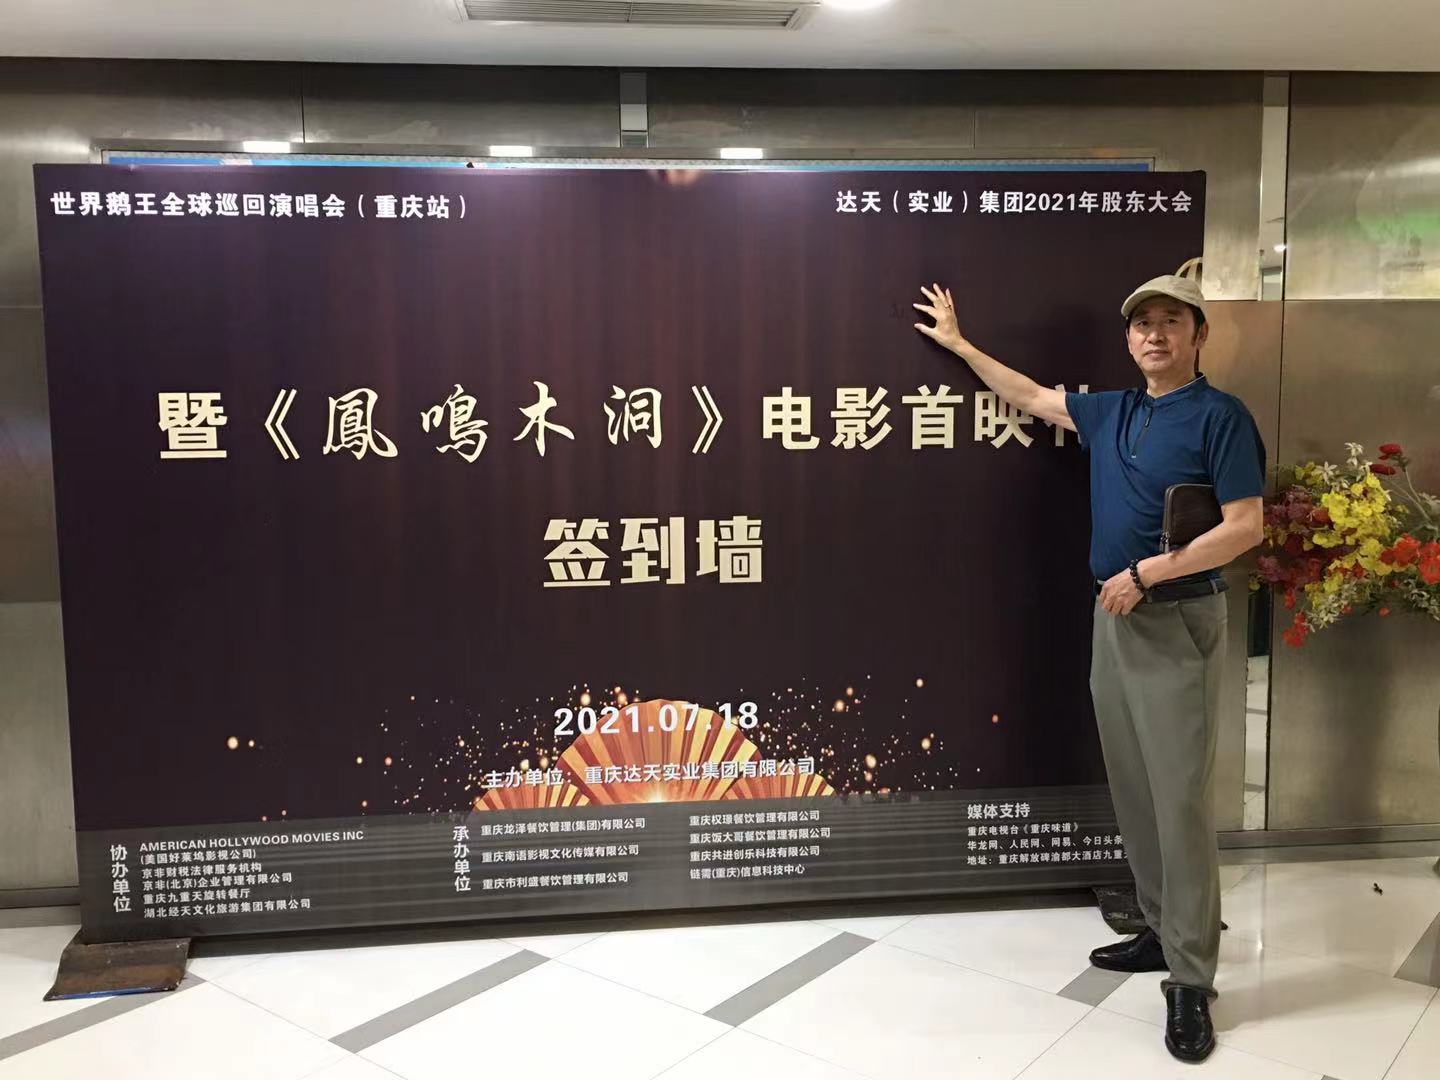 一场有意义的企业界文化界交流大会 在重庆渝都大酒店圆满召开